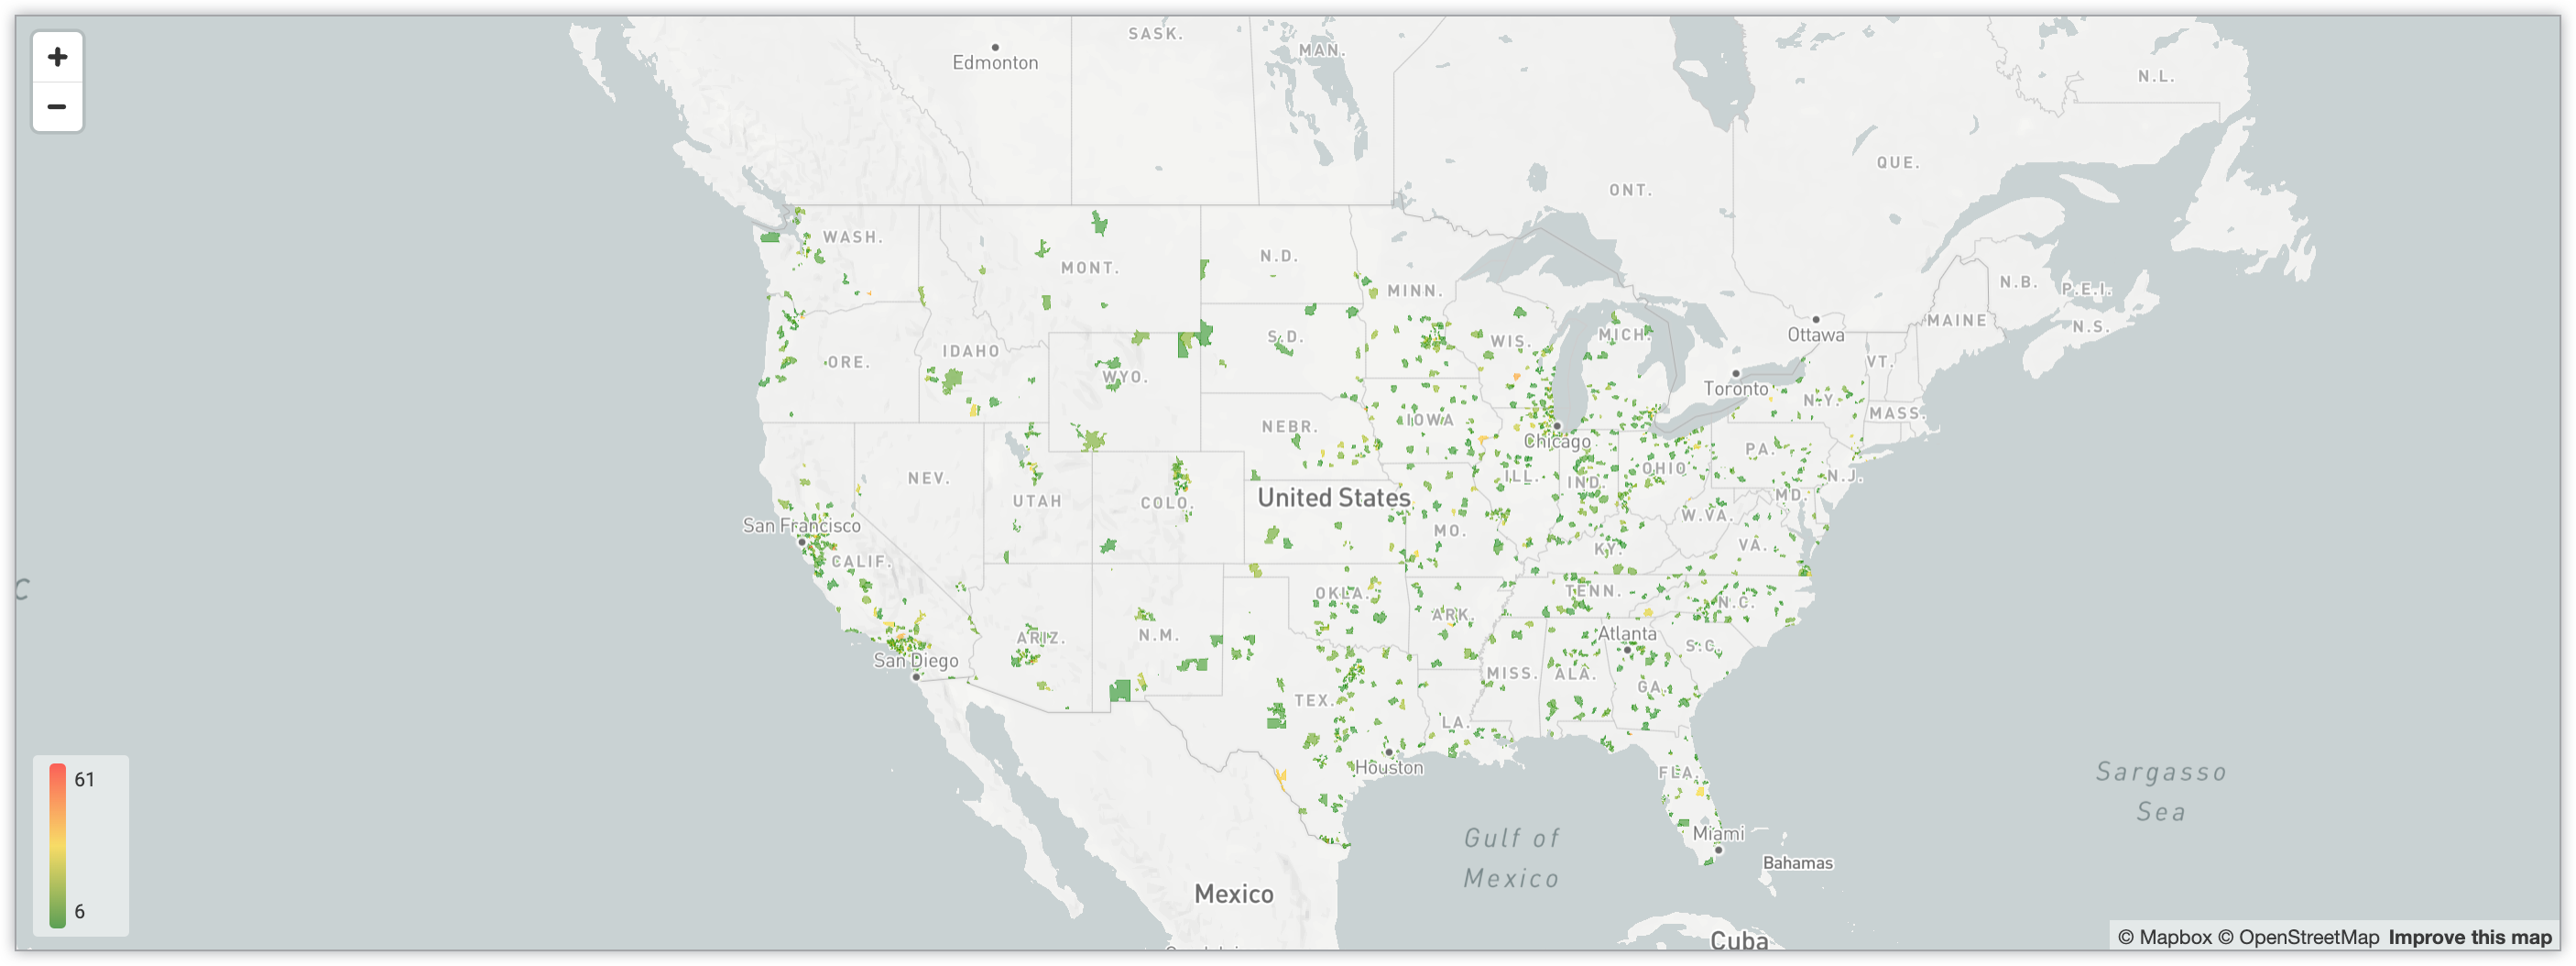 그라데이션 색 구분 시스템을 통해 미국의 우편번호 전반에서 사용자 수를 보여주는 대화형 지도입니다.